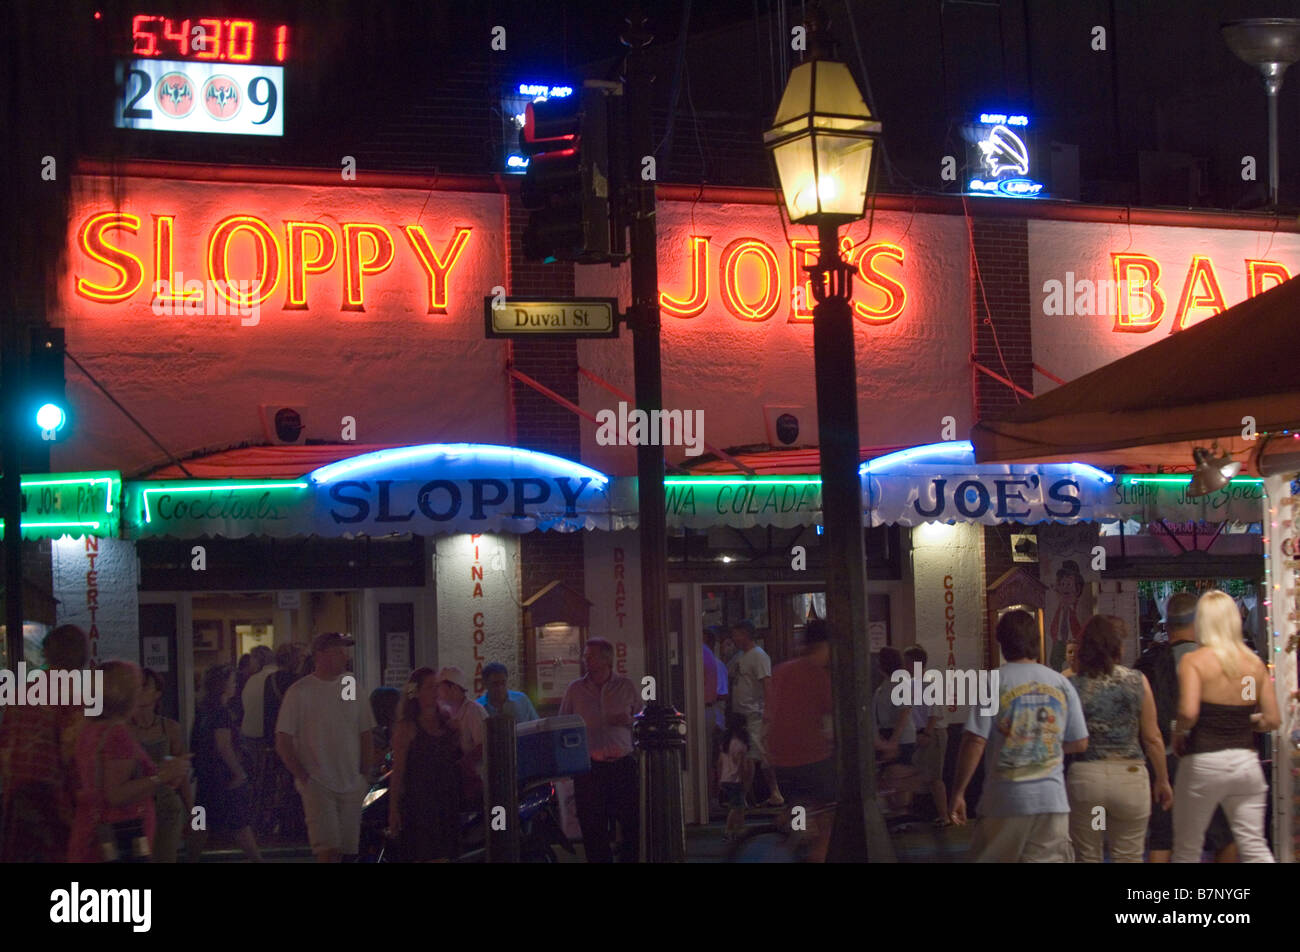 Sloppy joes Vue de nuit bar à Key West en Floride Banque D'Images